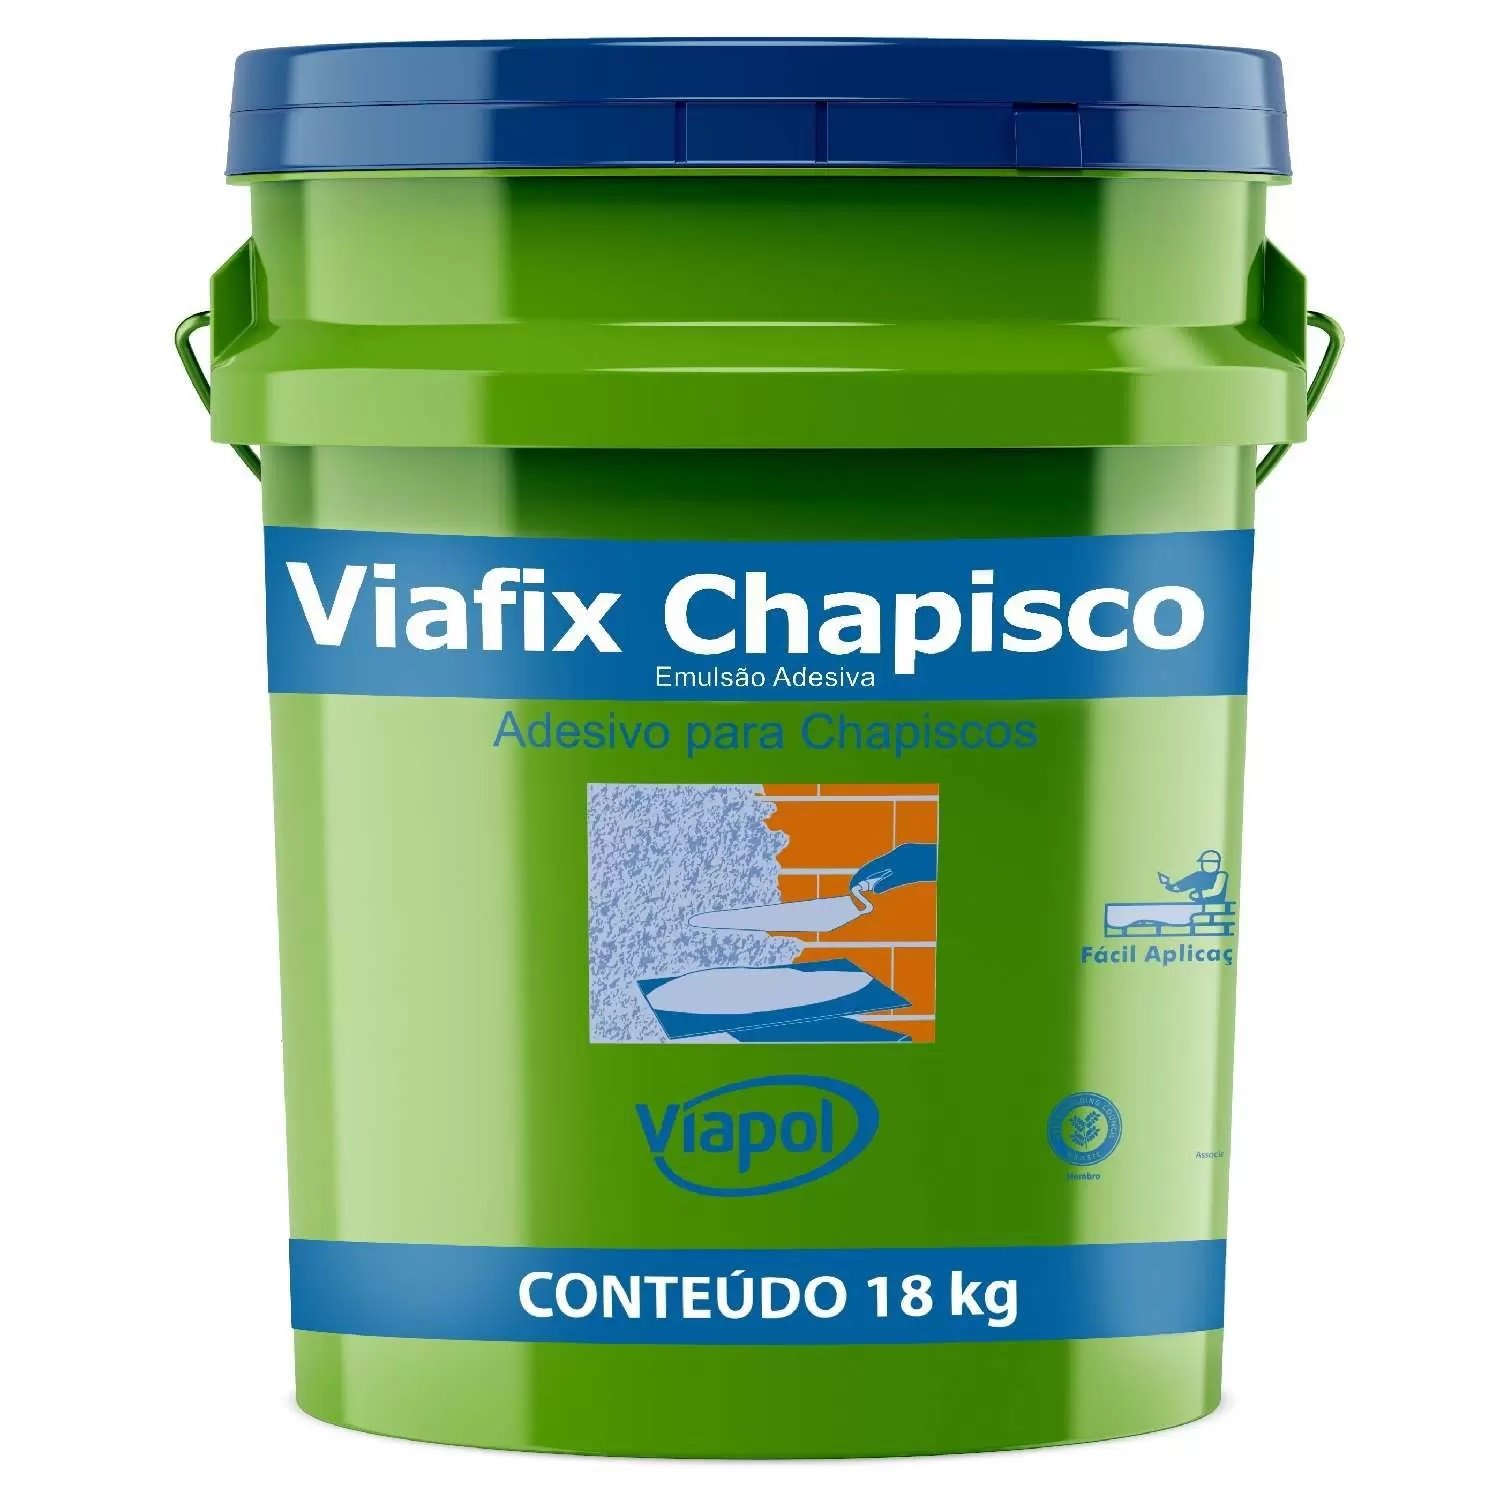 Viafix Chapisco - Adesivo Para Chapisco Viapol 18kg - 1